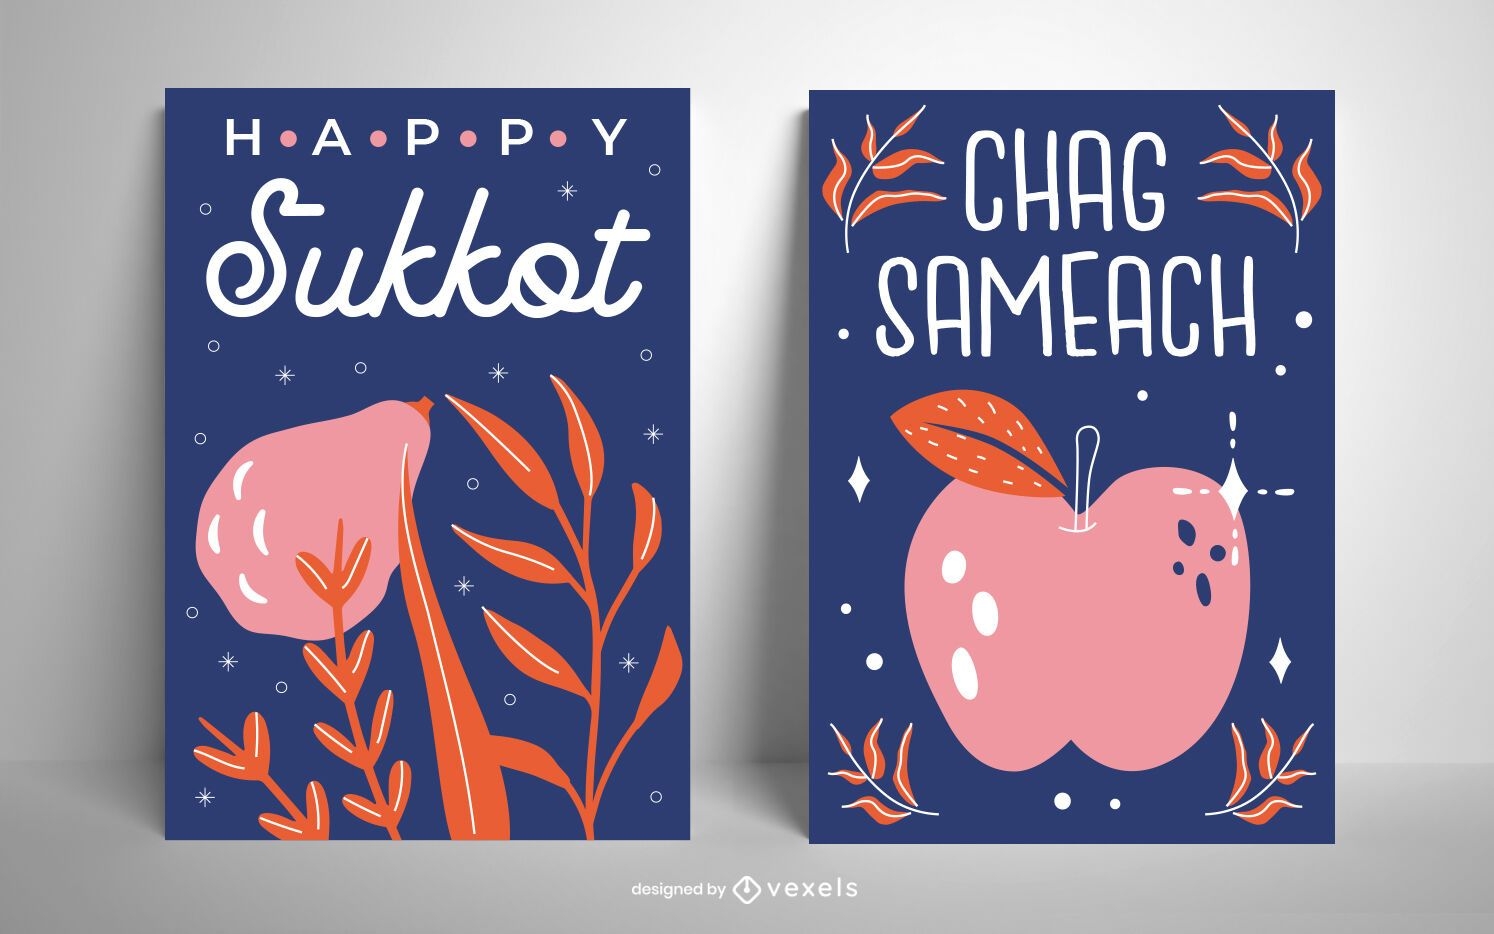 Chag Sameach Card Design Set